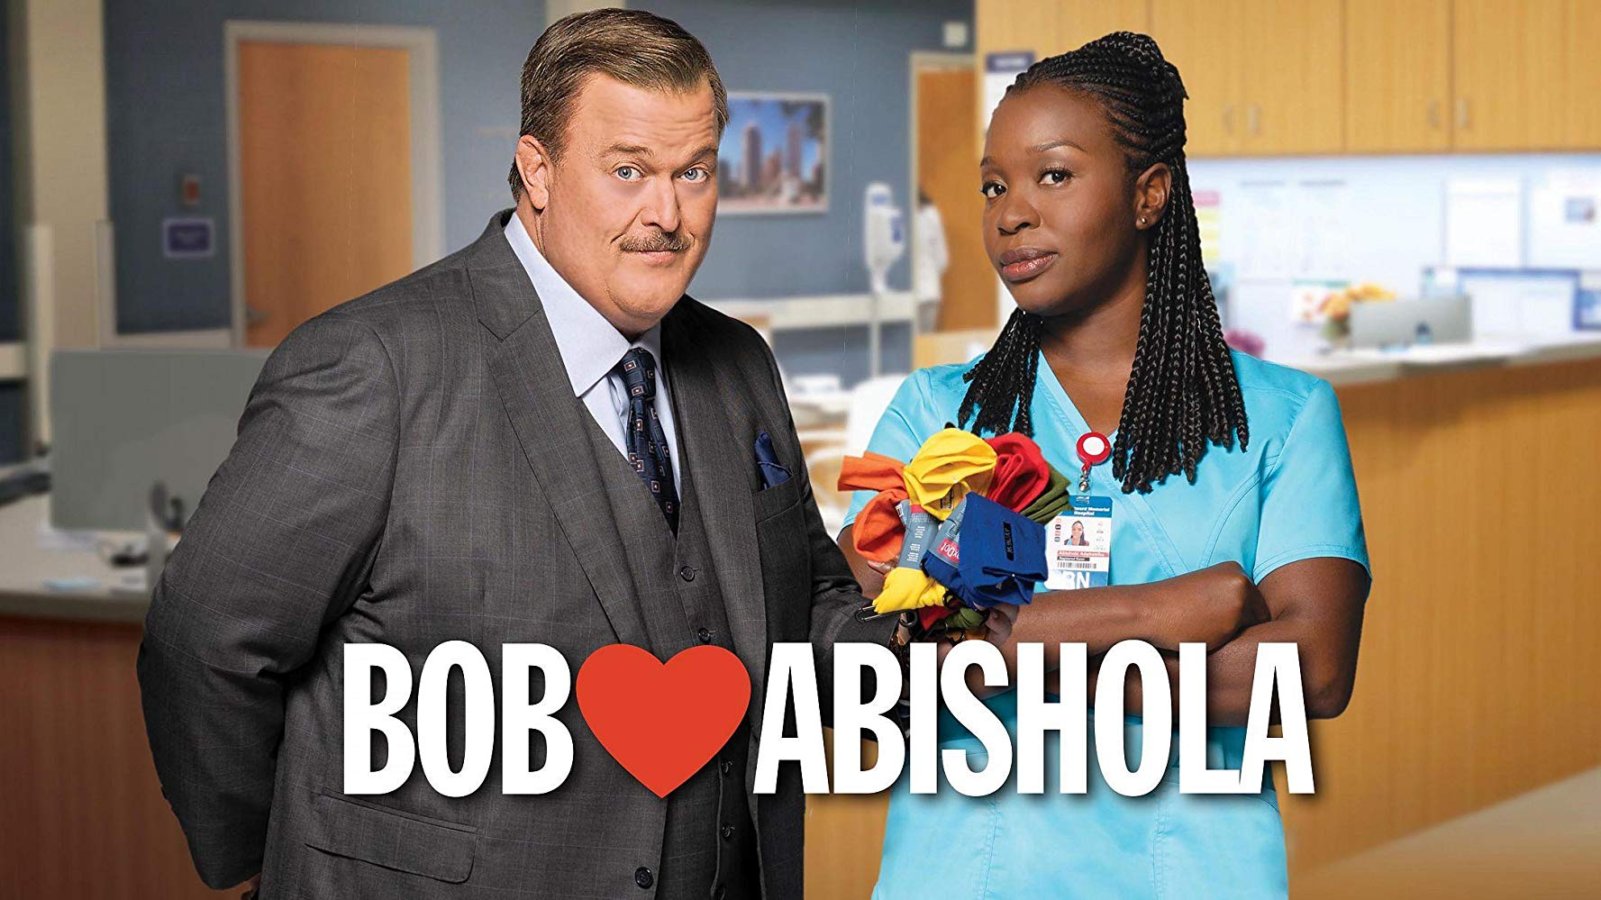 Serie Tv Bob Hearts Abishola dalla 2° alla 3° stagione